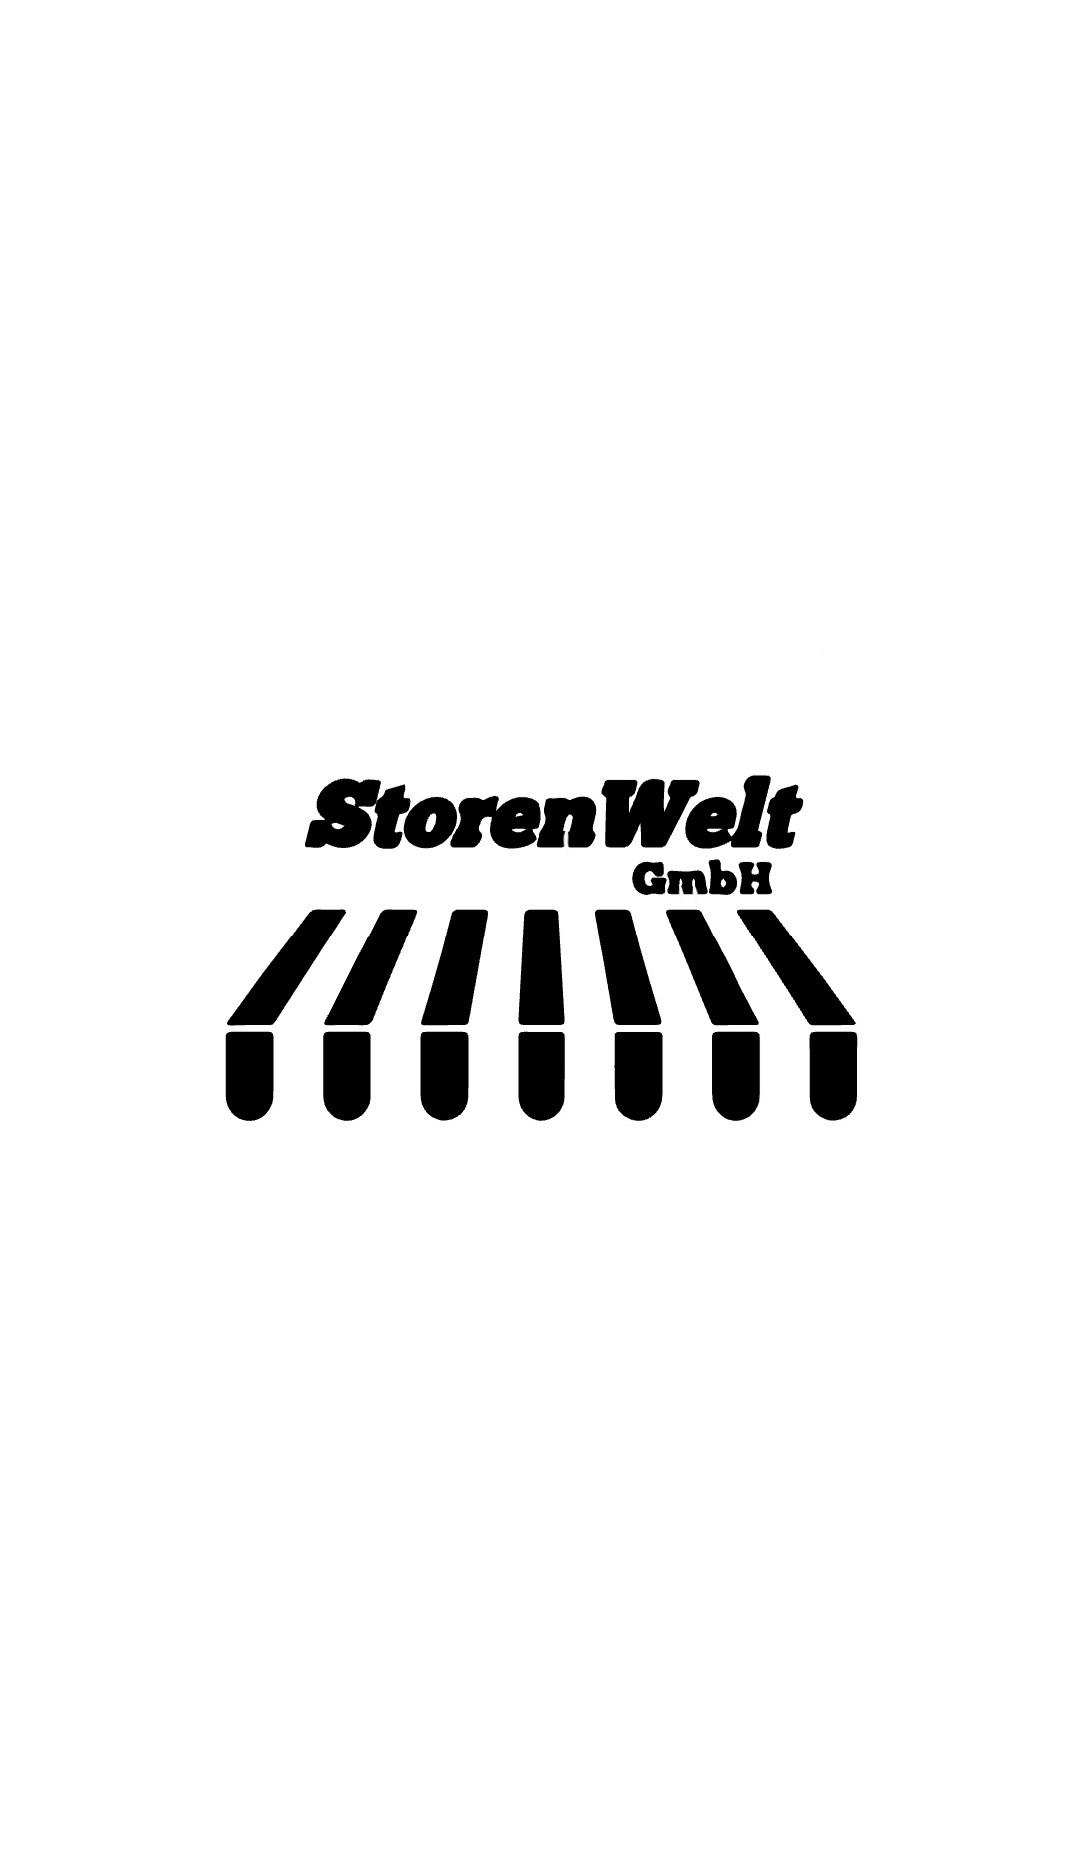 Bilder Storen Welt GmbH